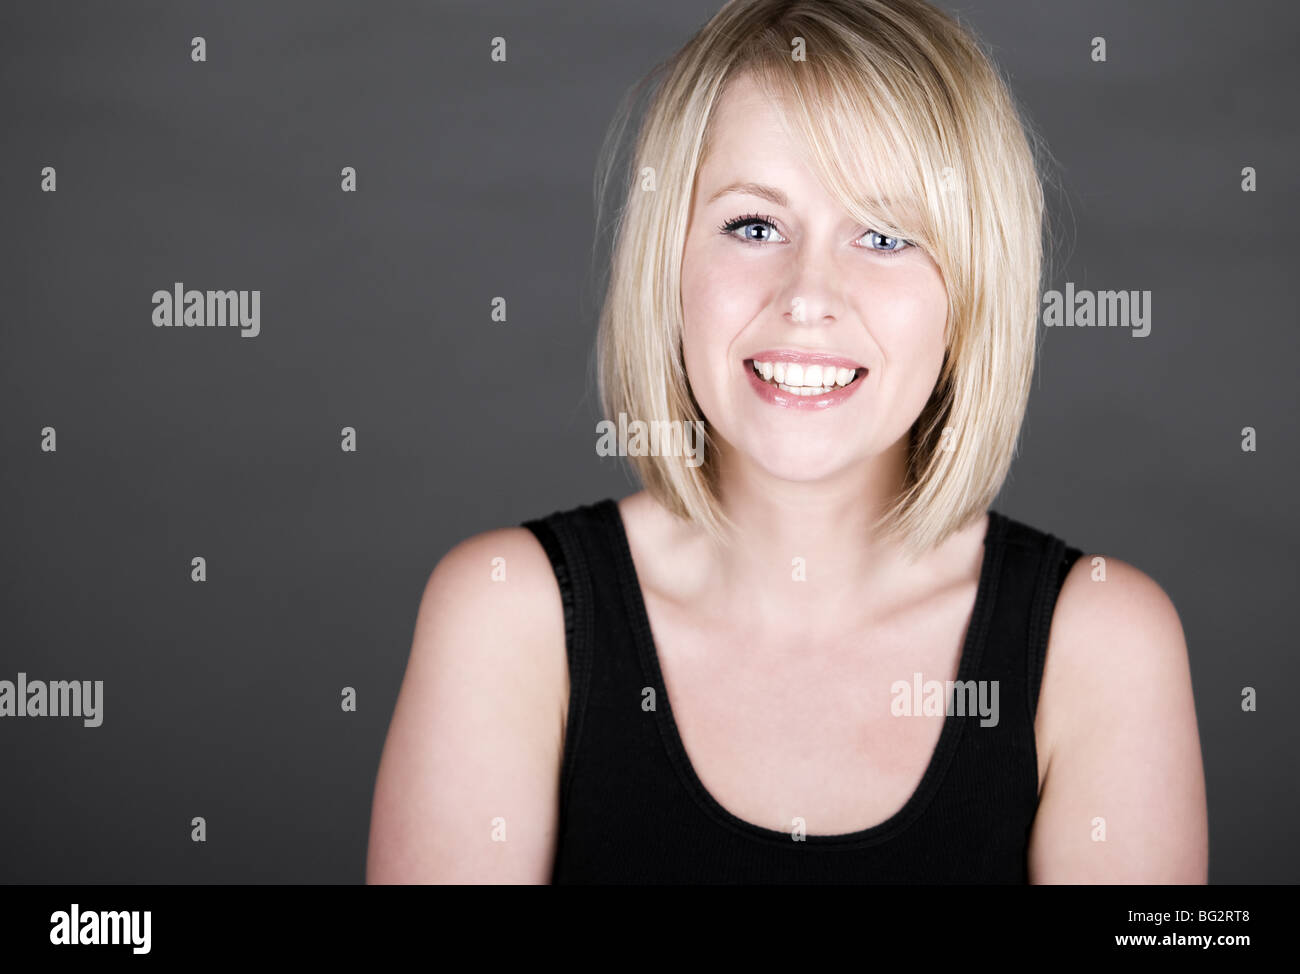 Schuss von einem schönen Lächeln auf den Lippen Blonde Mädchen vor grauem Hintergrund Stockfoto